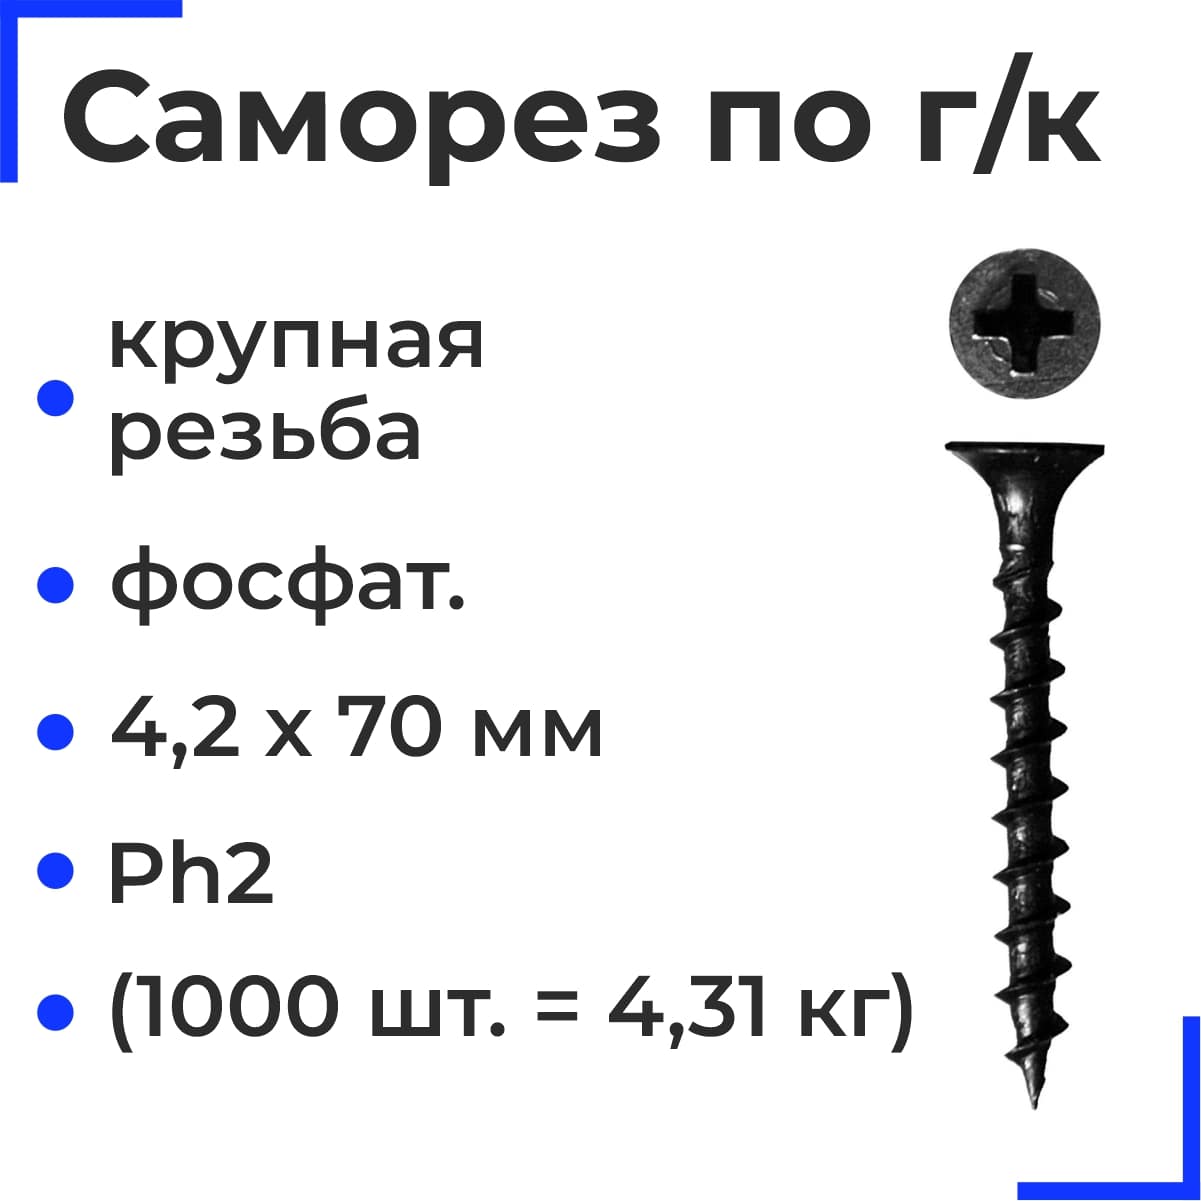 Саморез по г/к крупная резьба фосфат. 4,2х70 НЛМК Ph2 (1000шт = 4,31кг) 